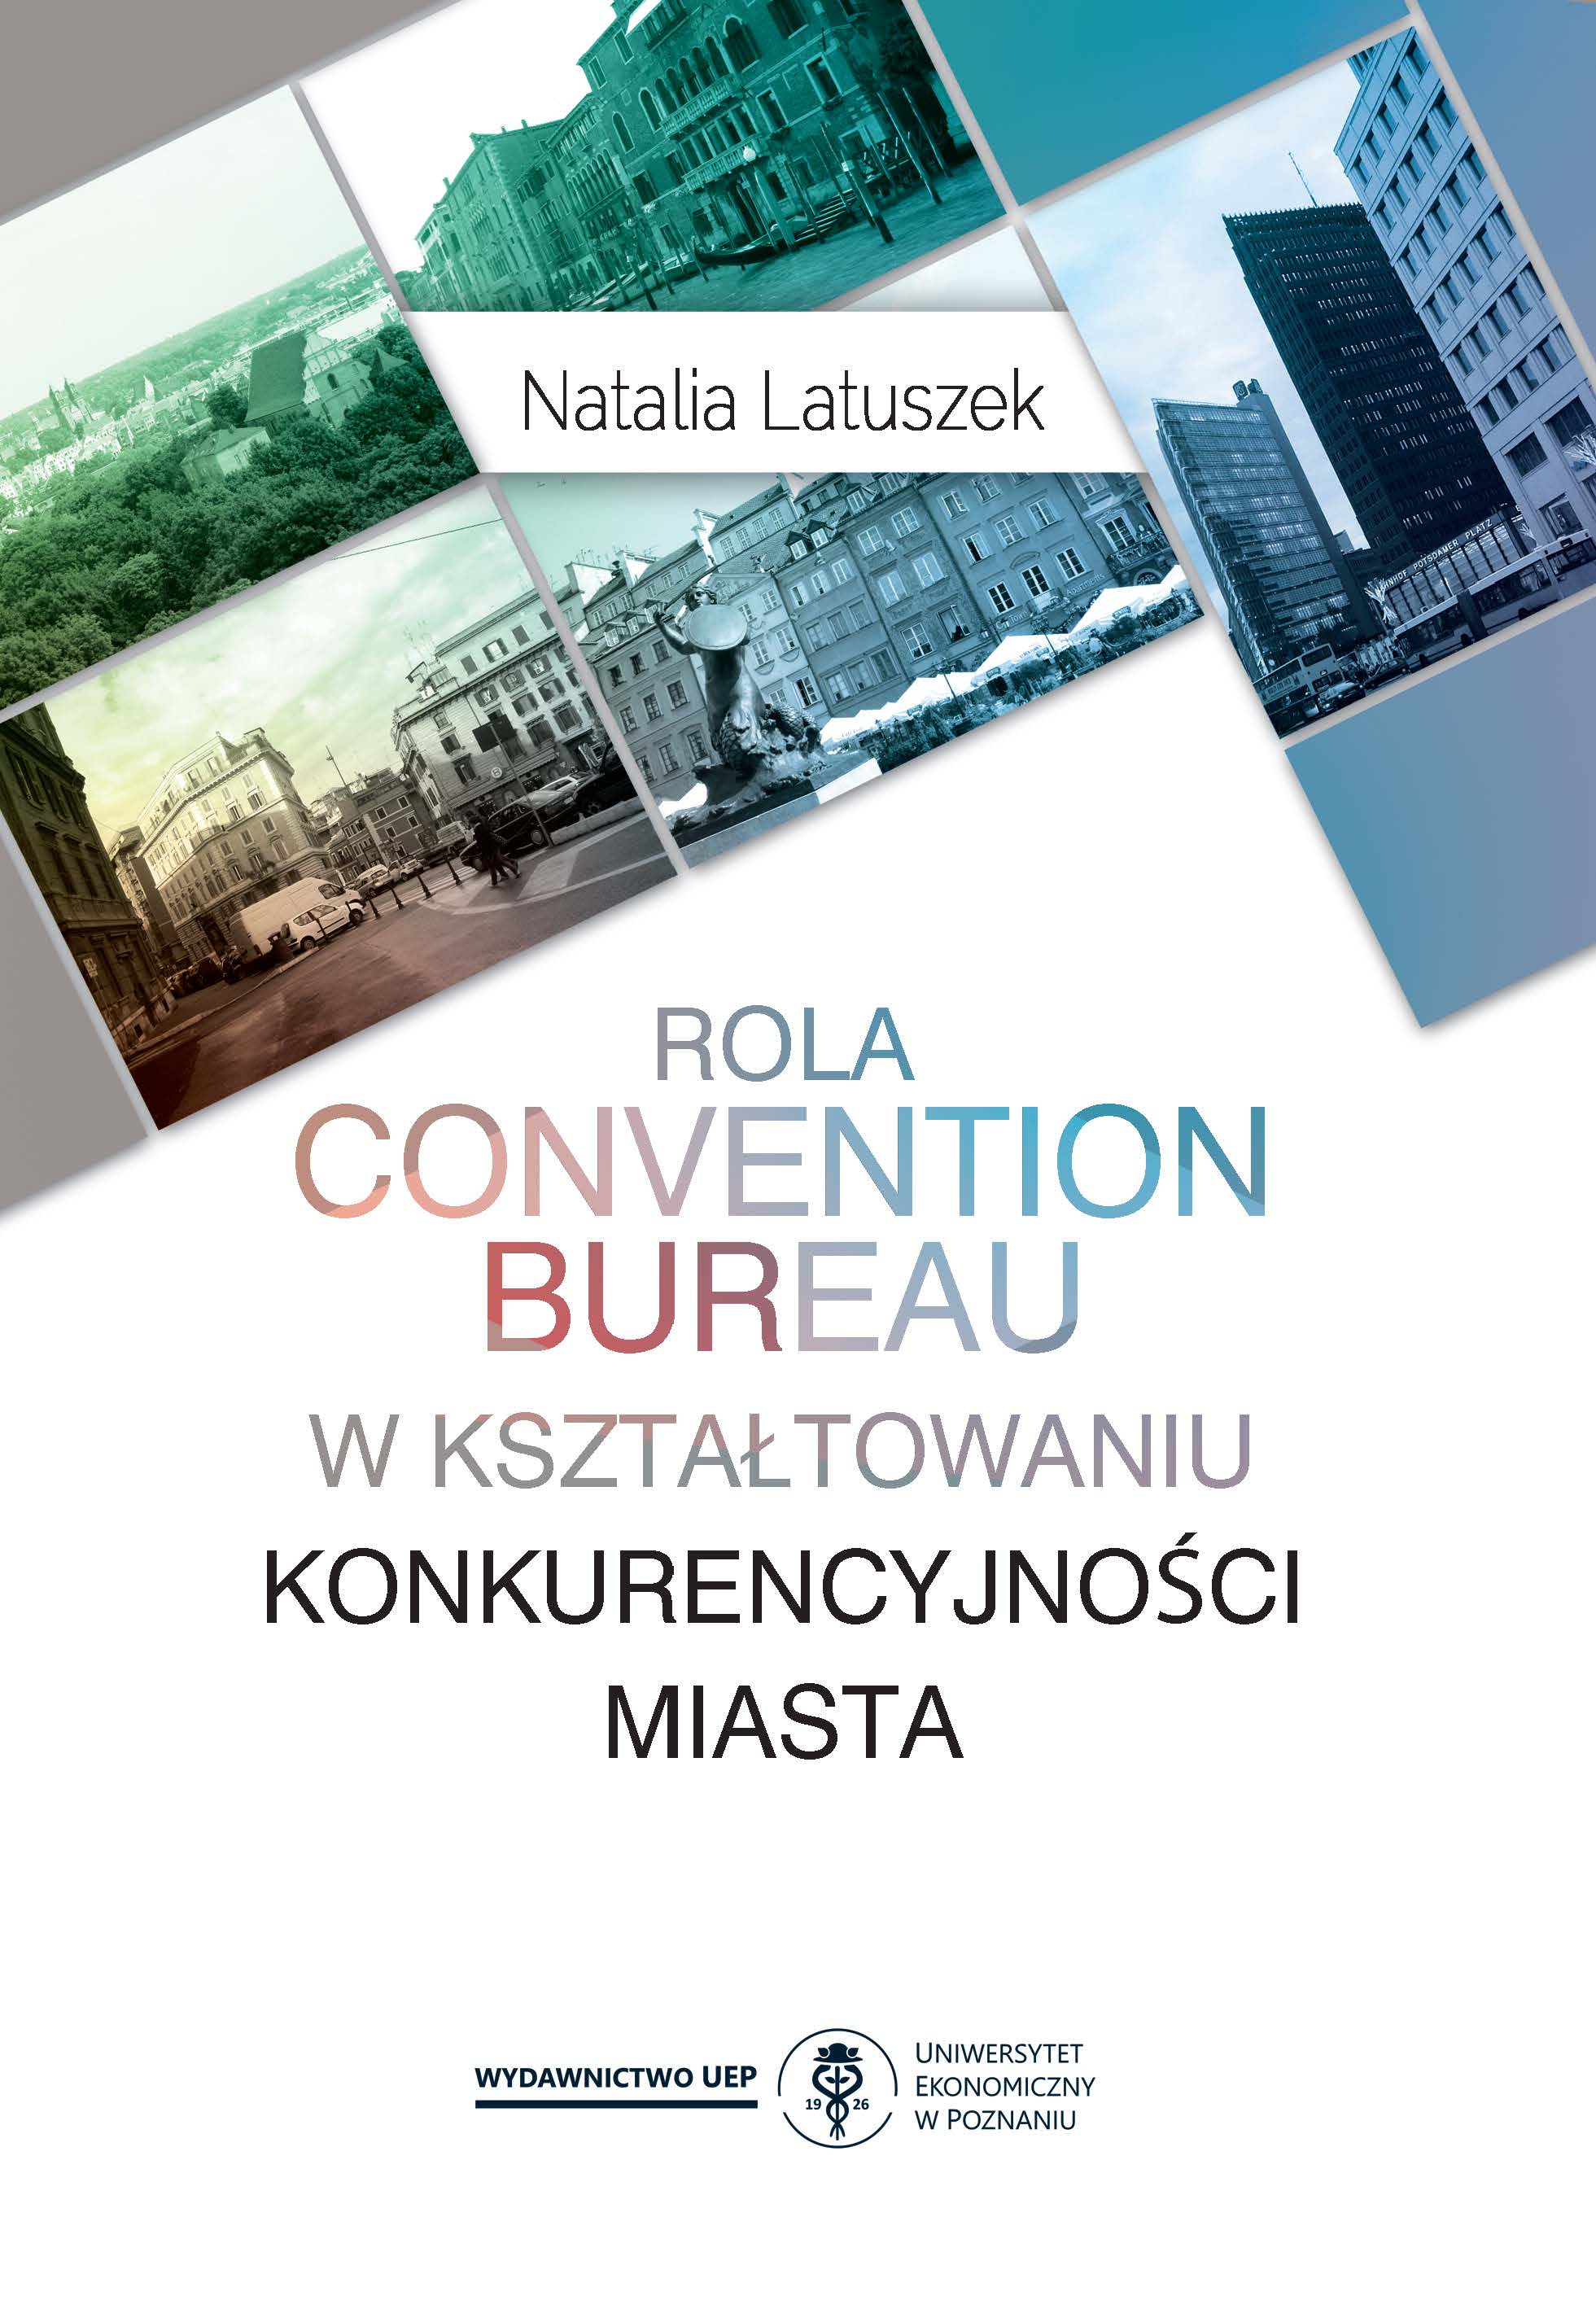 Rola convention bureau w kształtowaniu konkurencyjności miasta